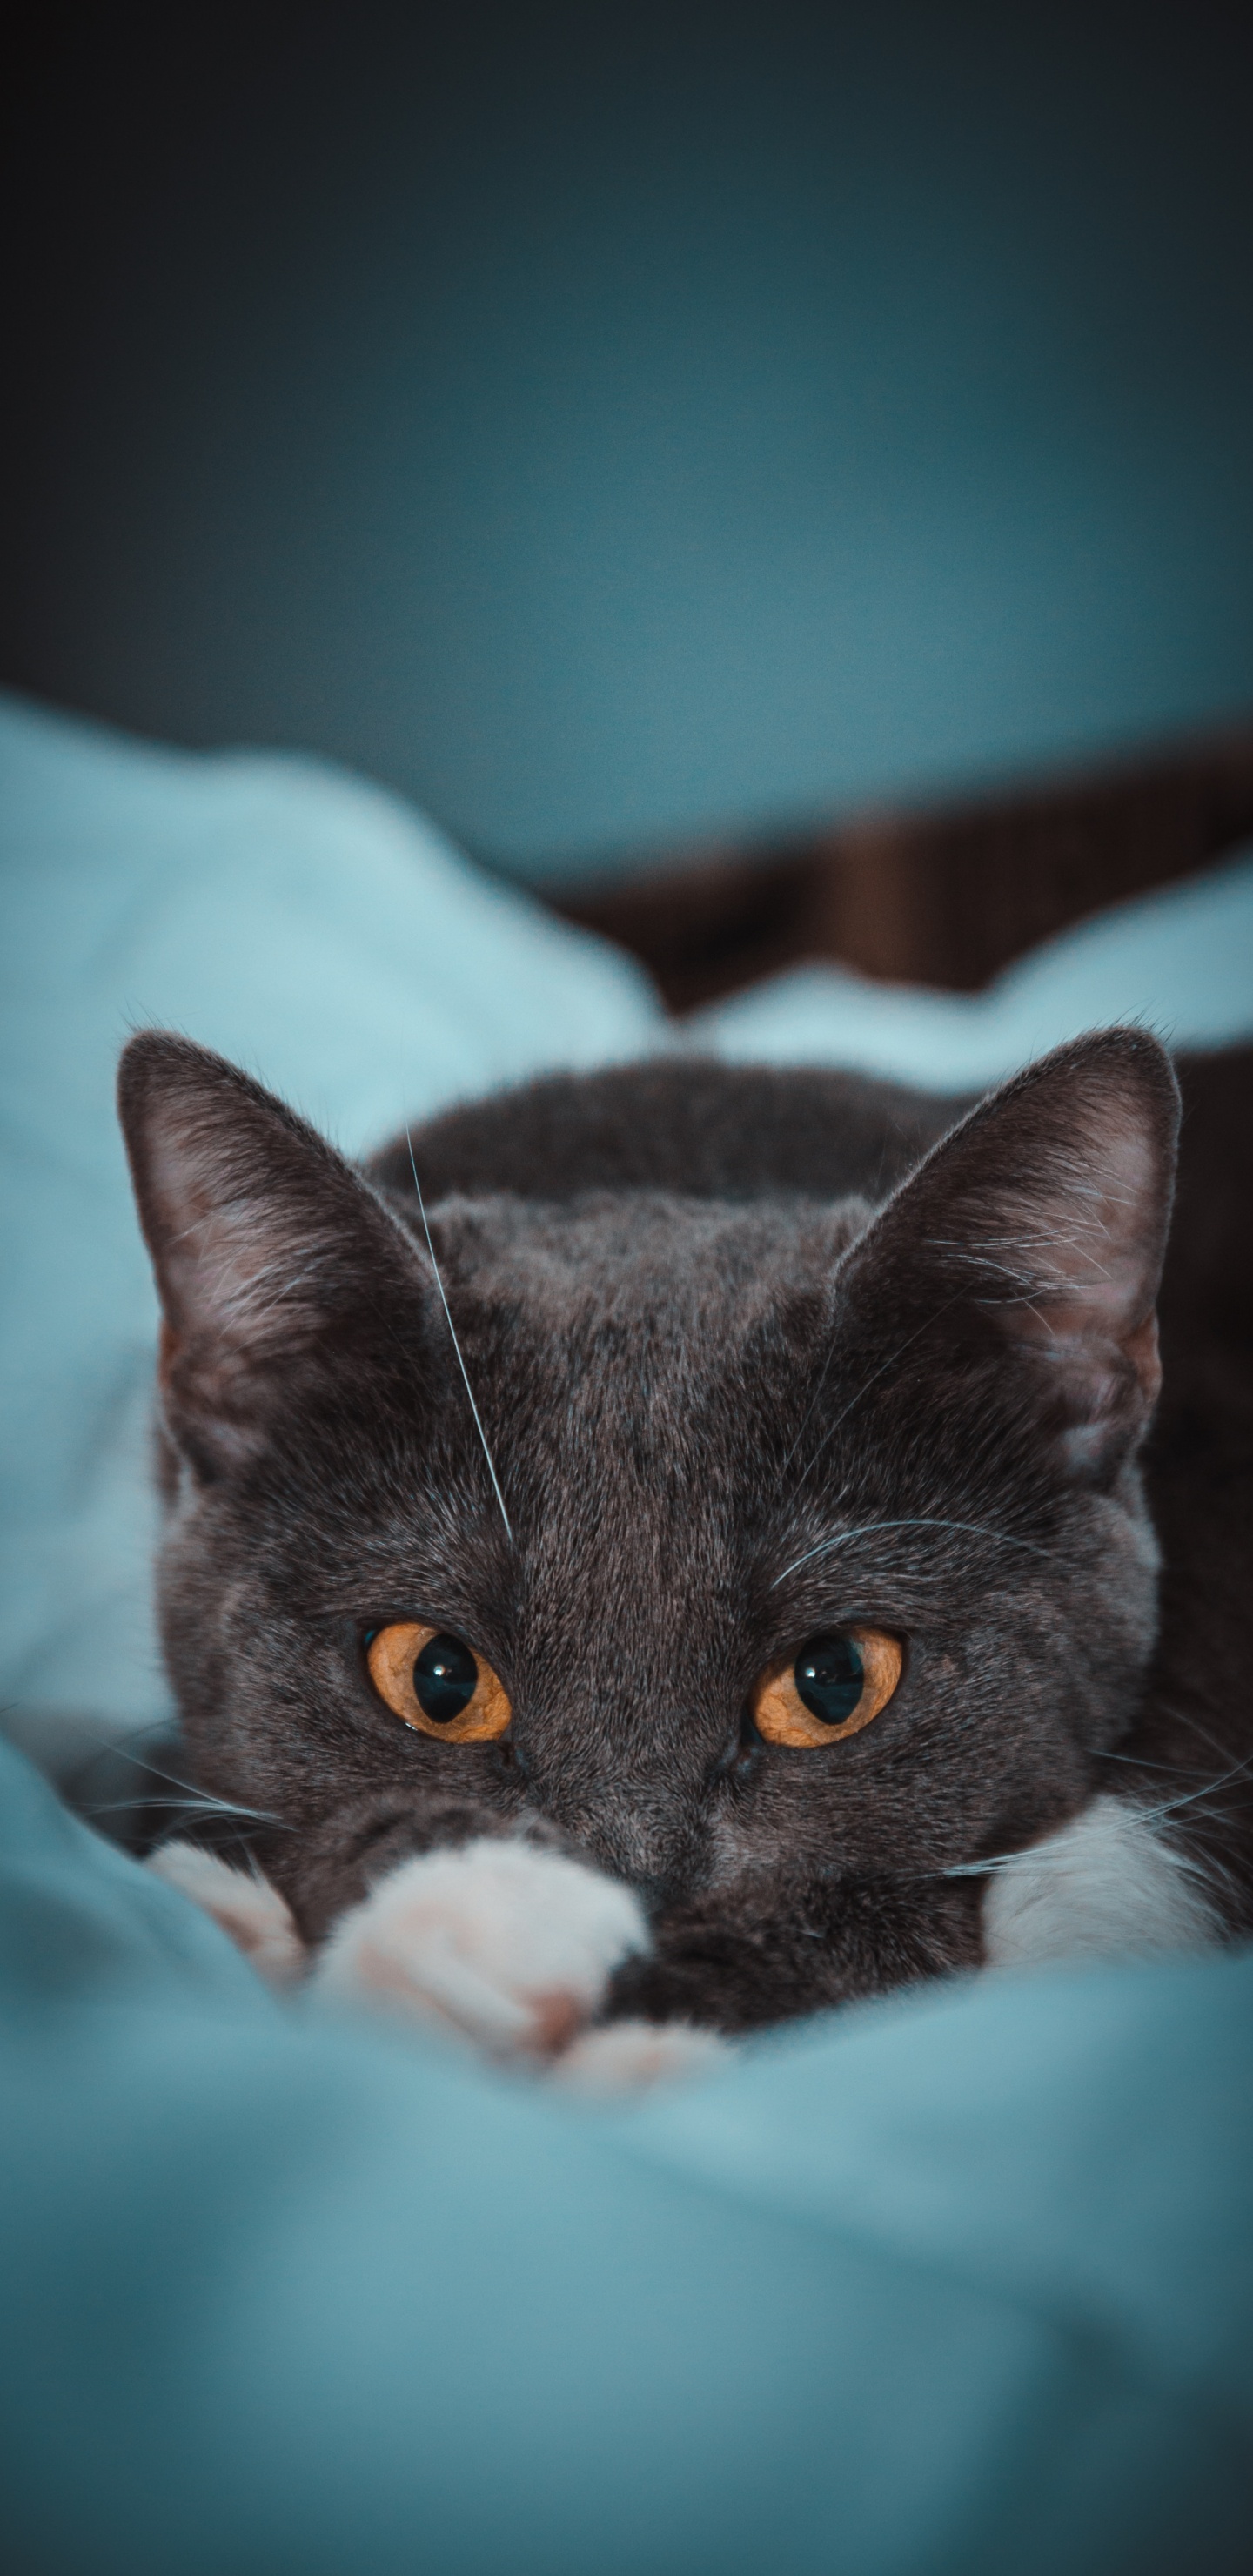 Schwarz-weiße Katze Auf Blaugrünem Textil. Wallpaper in 1440x2960 Resolution